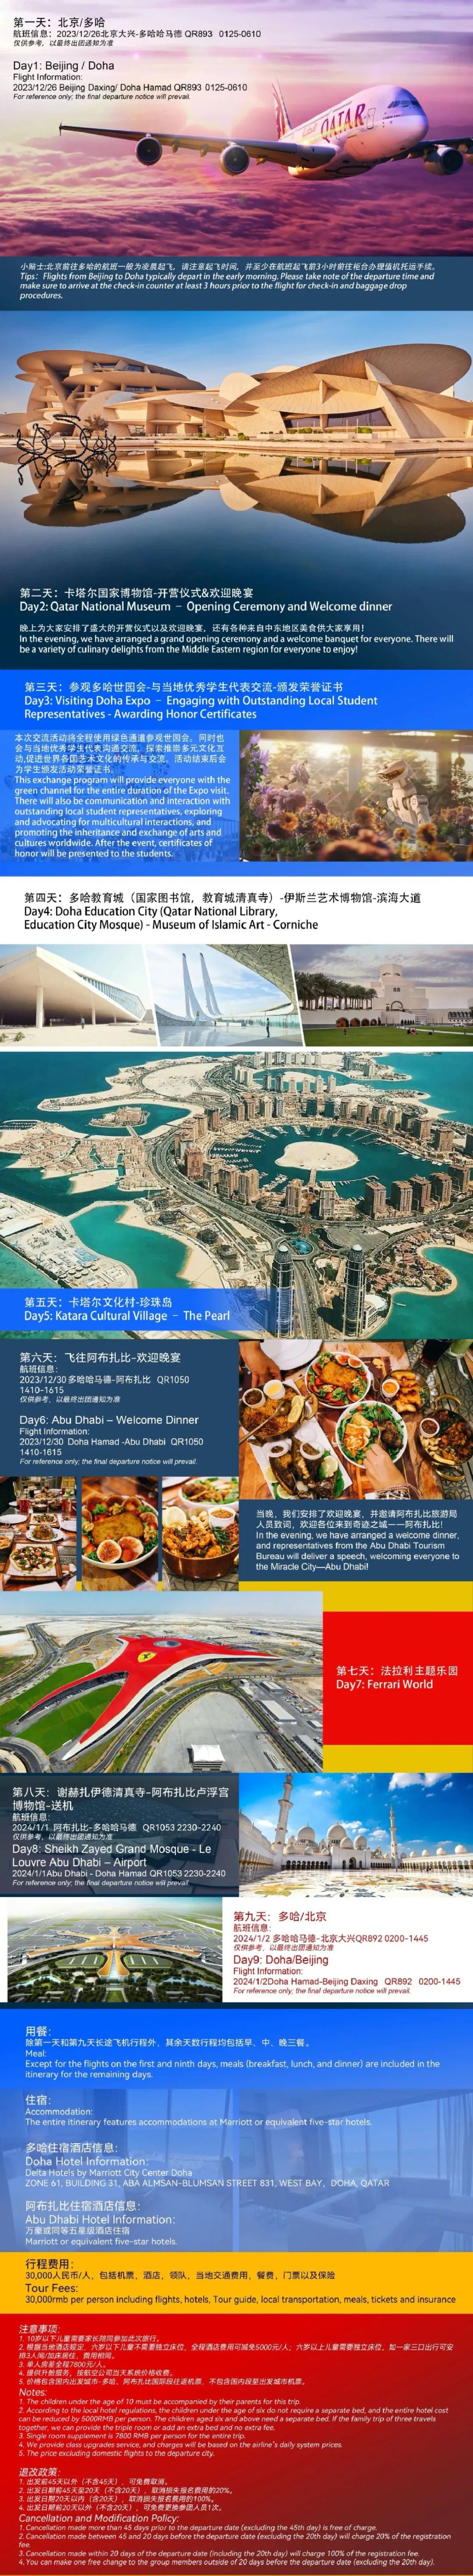 CISH Expo 2023 Doha Qatar Winter Program 多哈世界园林博览会冬季游学项目